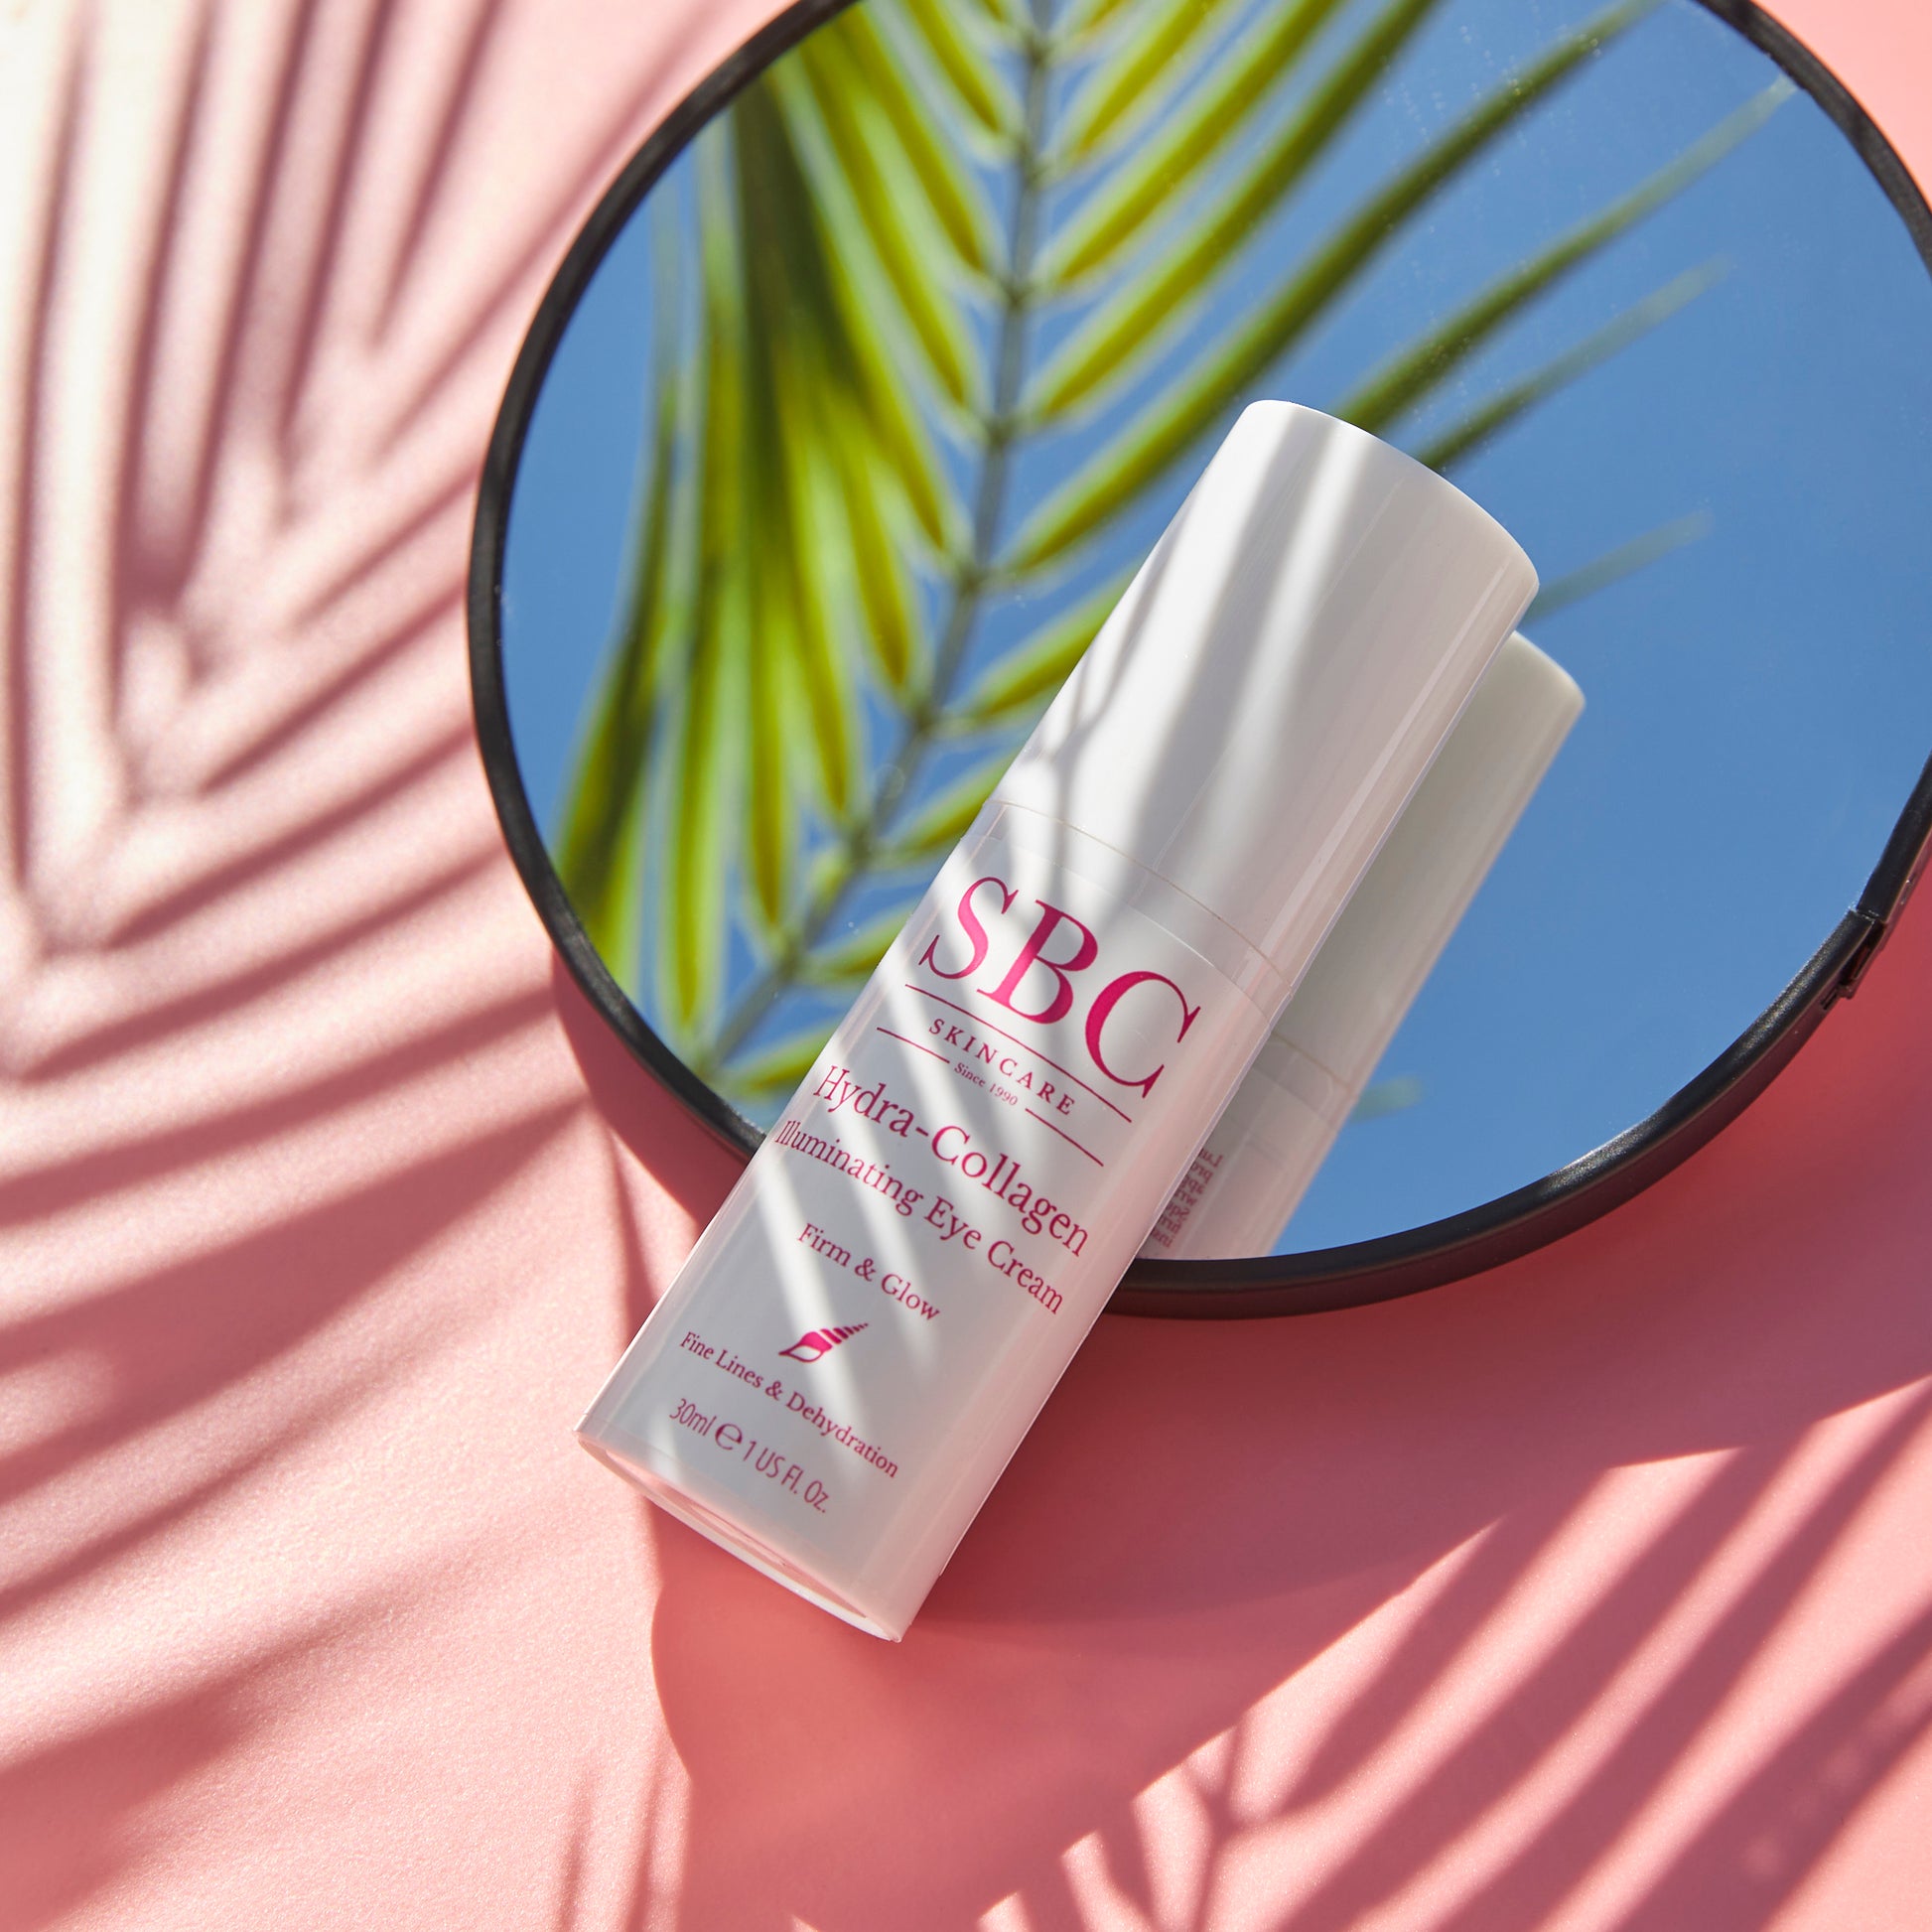 Hydra-Collagen Illuminating Eye Cream on a mirror with palm leaf shadows 